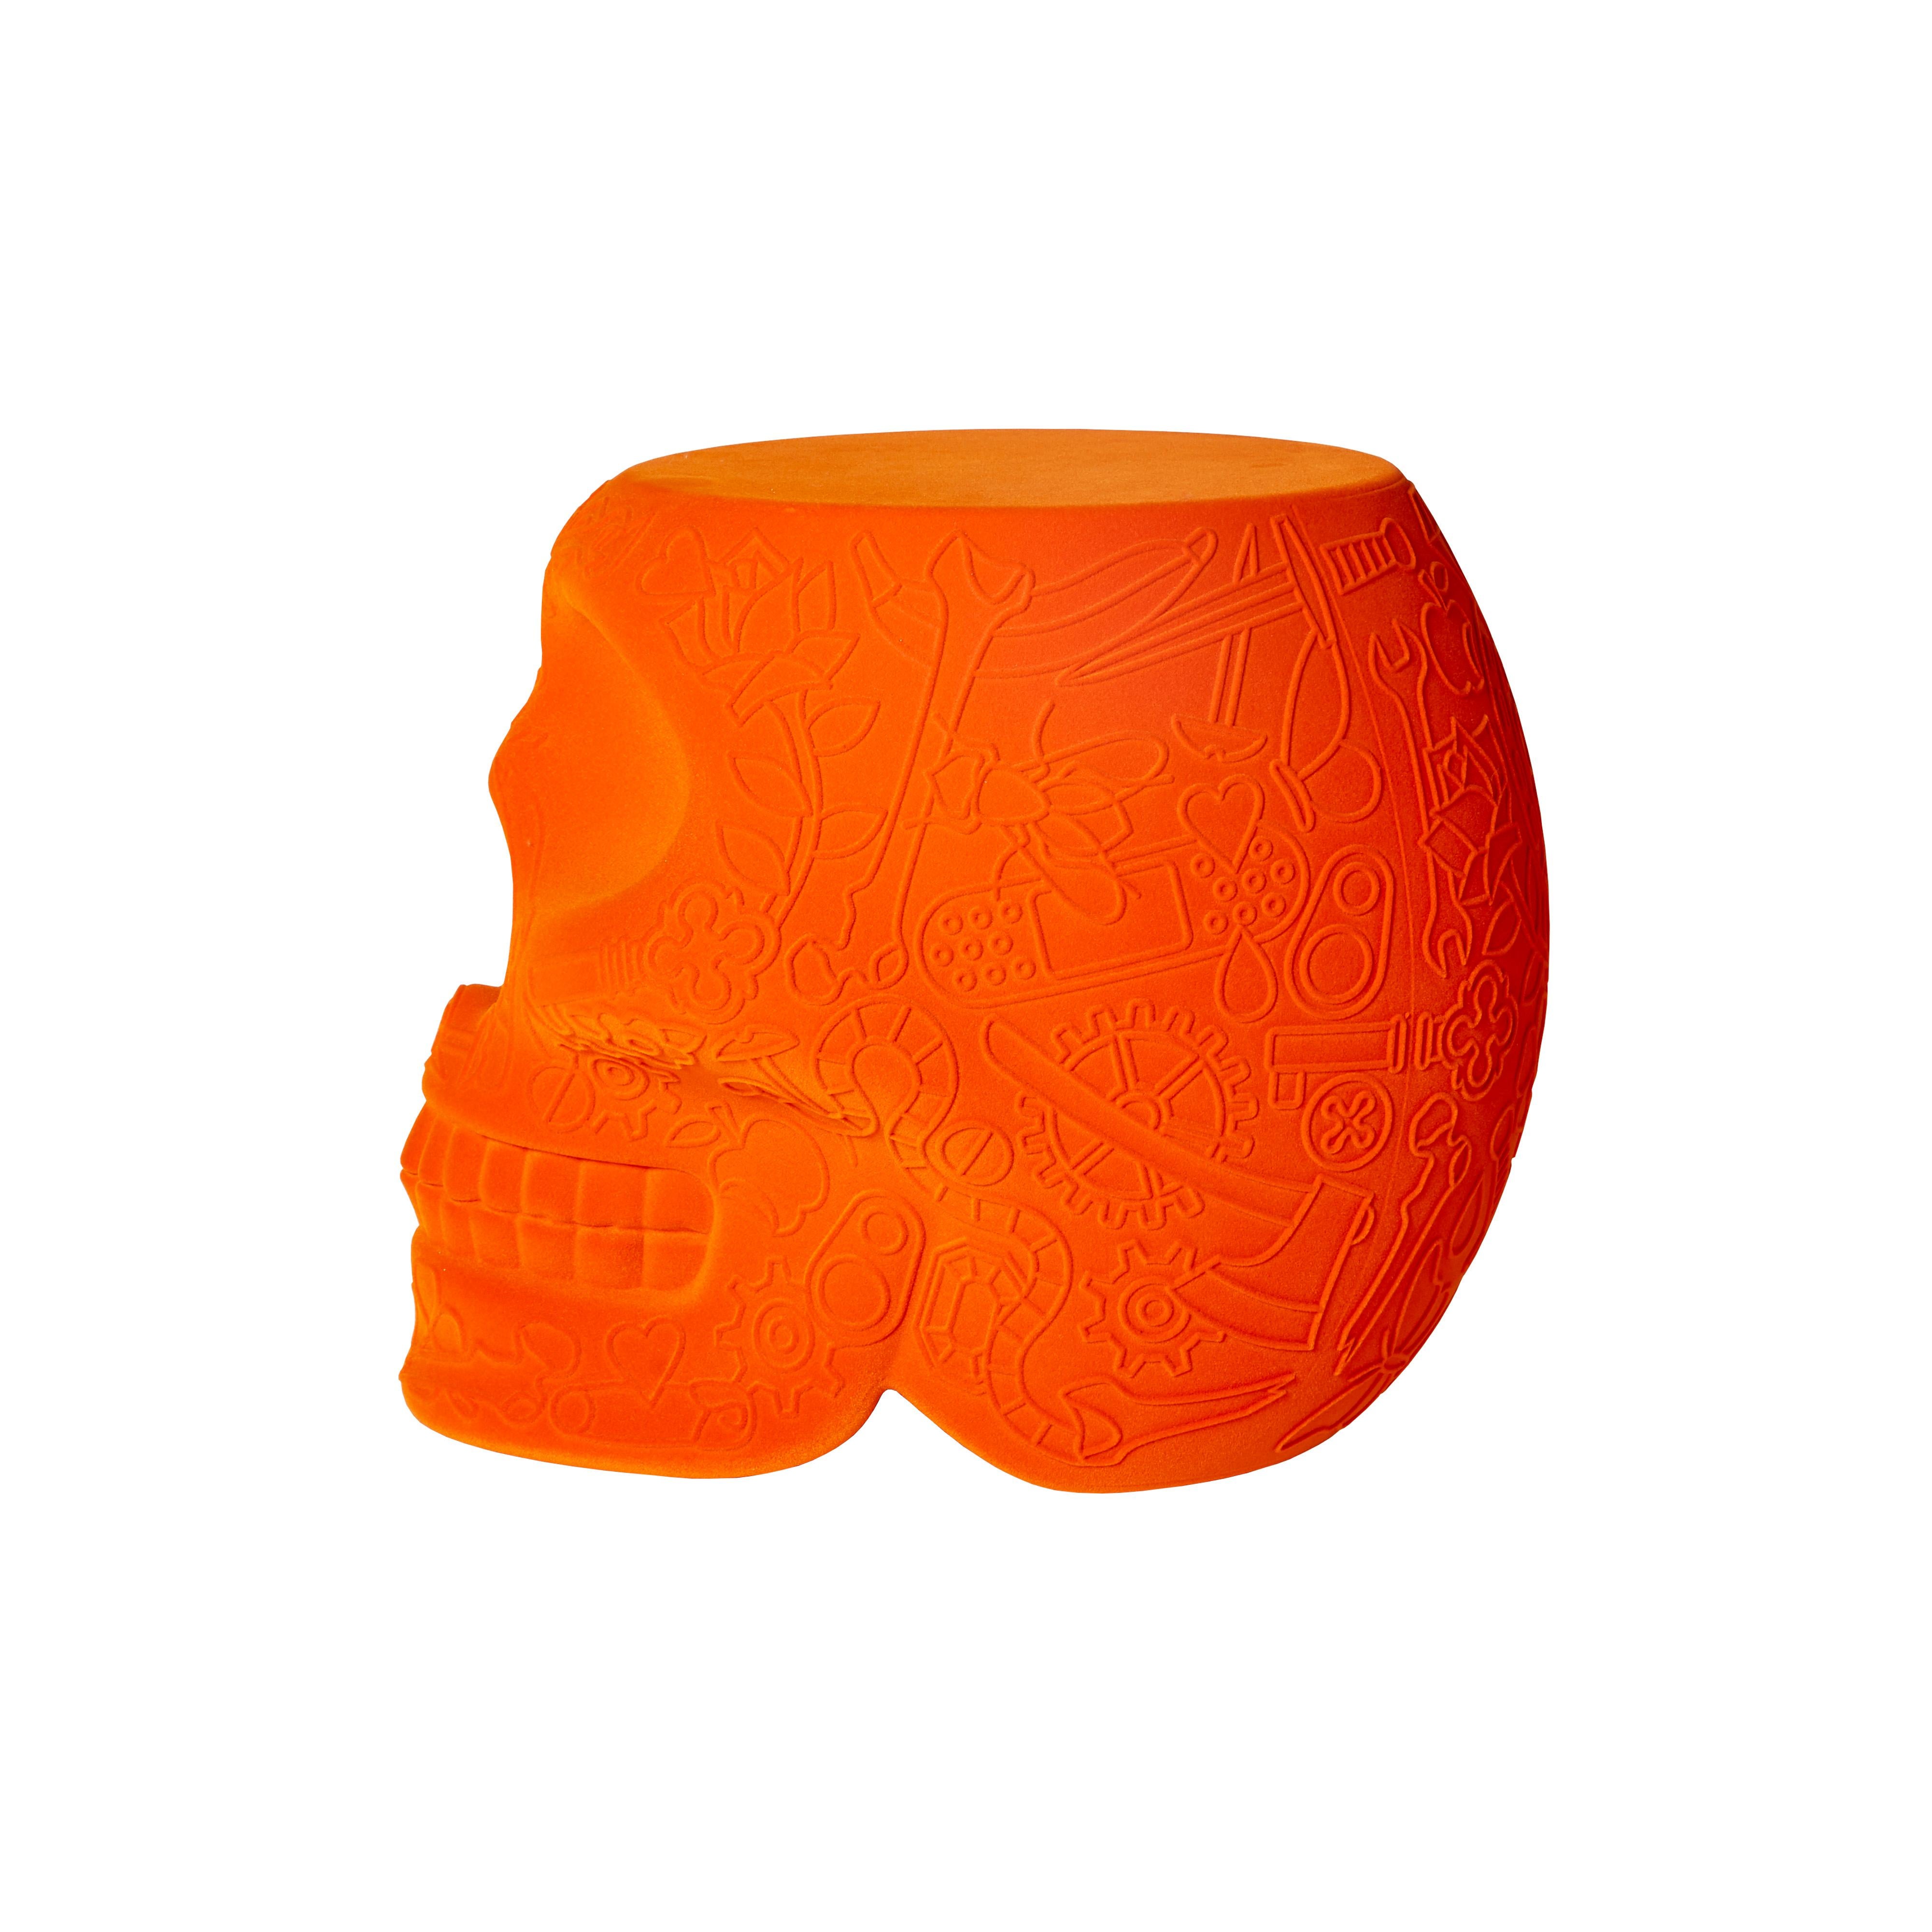 Orange Modern Velvet Mexican Calavera Skull Stool or Side Table By Studio Job 3